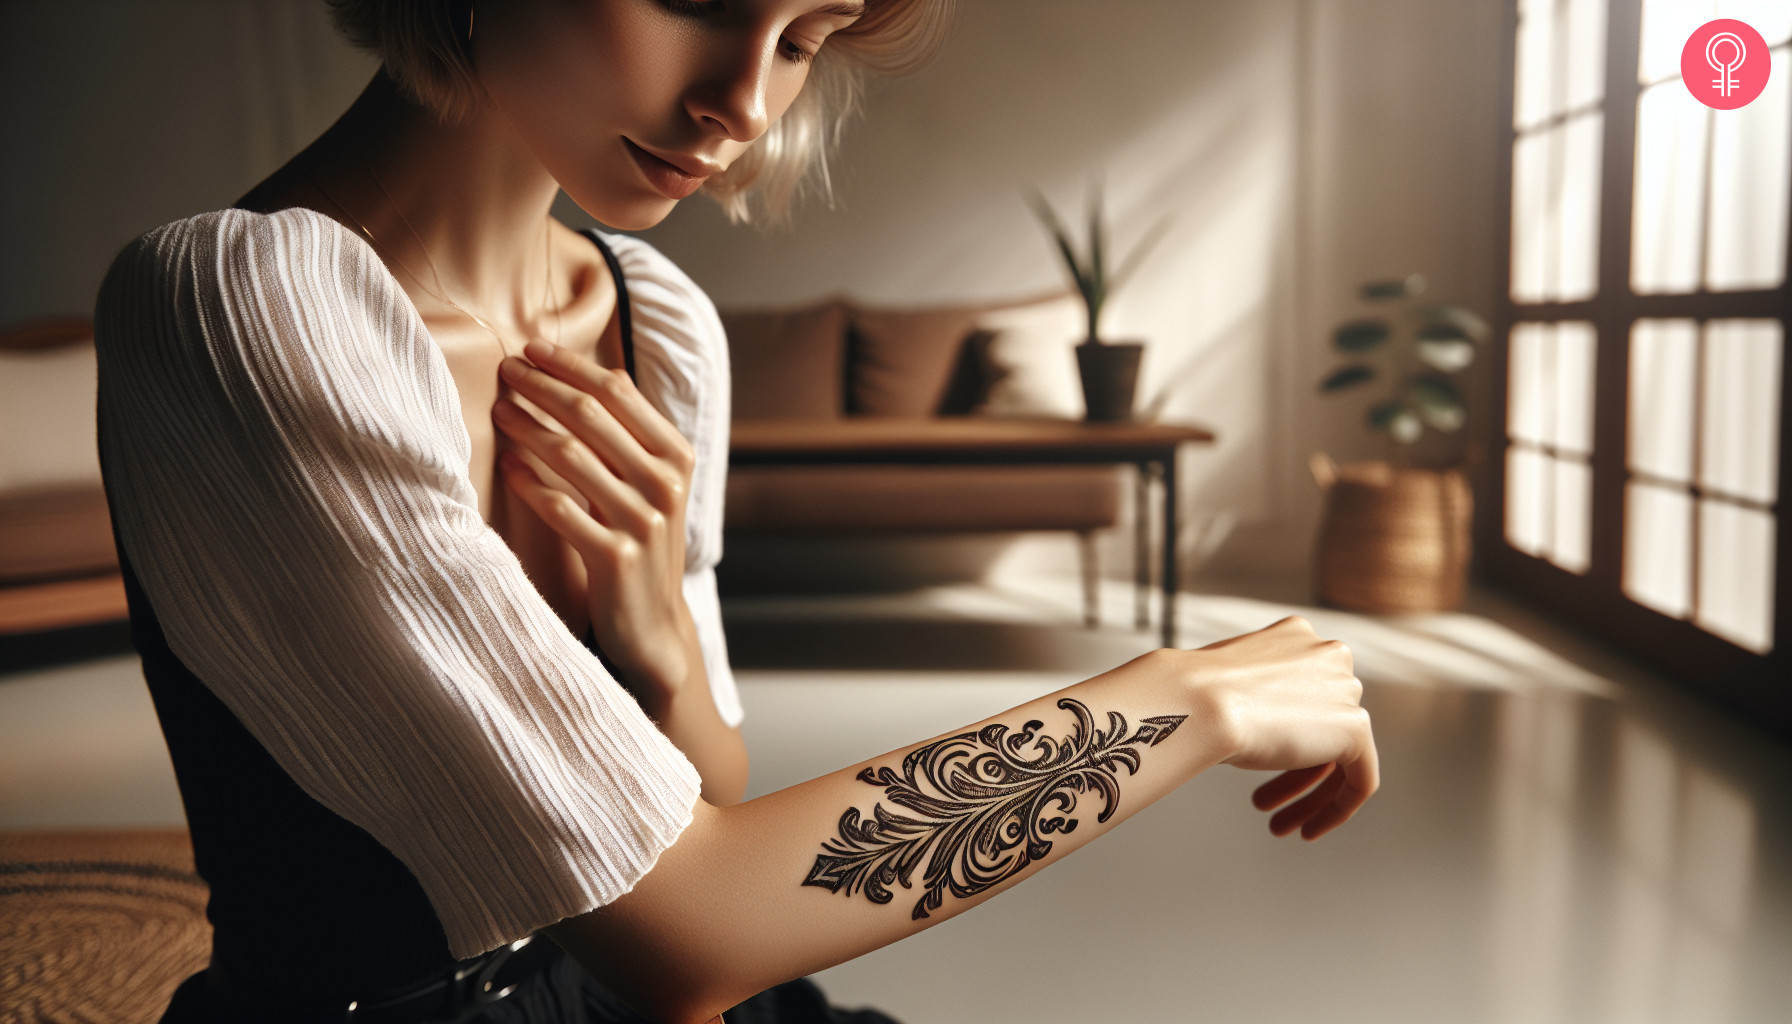 A girly fleur de lis tattoo on the forearm